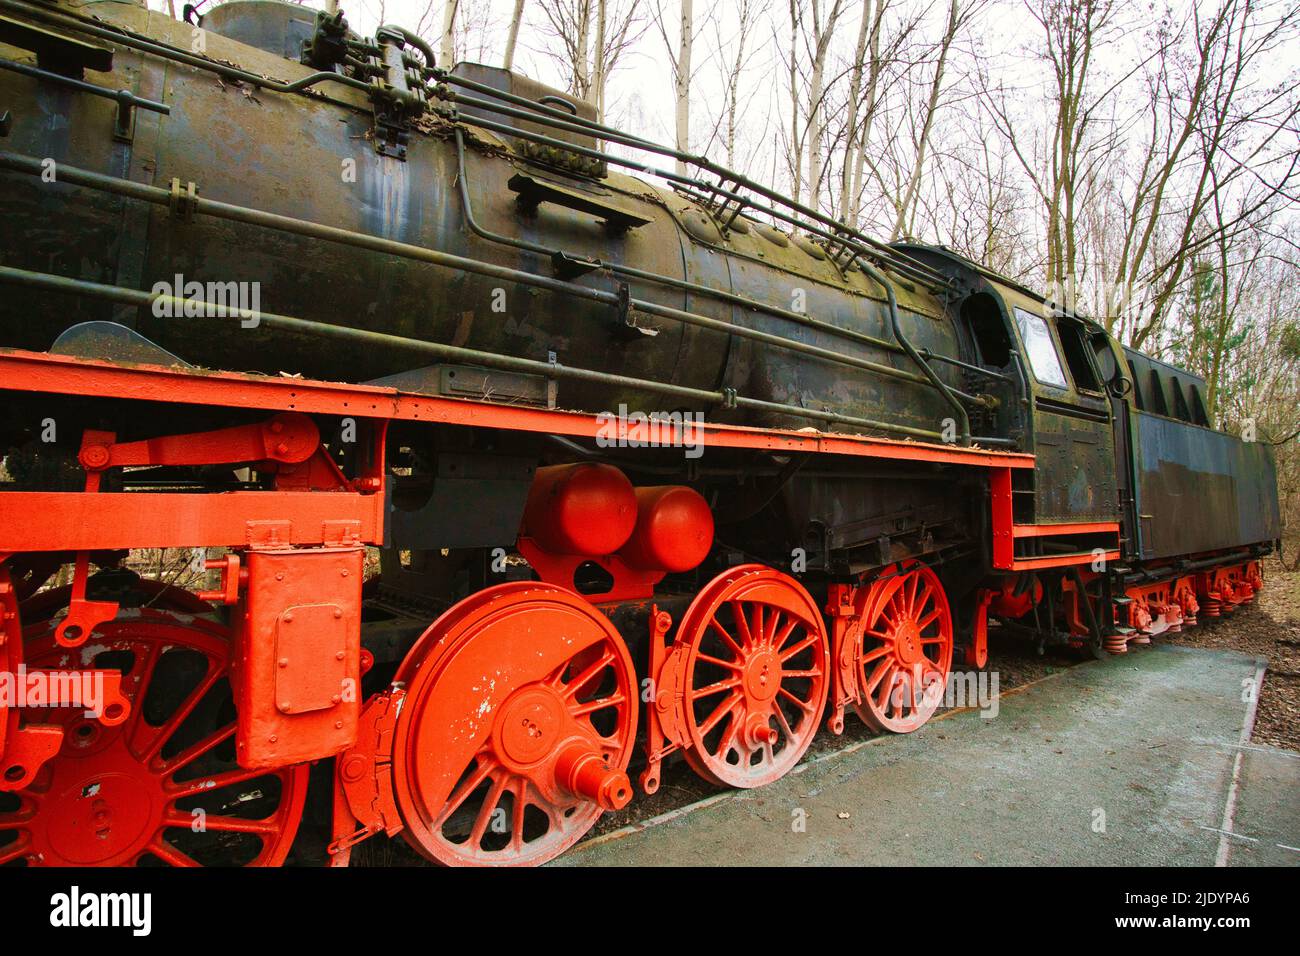 Locomotive à vapeur garée à un terminal. Chemin de fer historique de 1940 en rouge noir. Photo de nostalgie de la technologie passée Banque D'Images